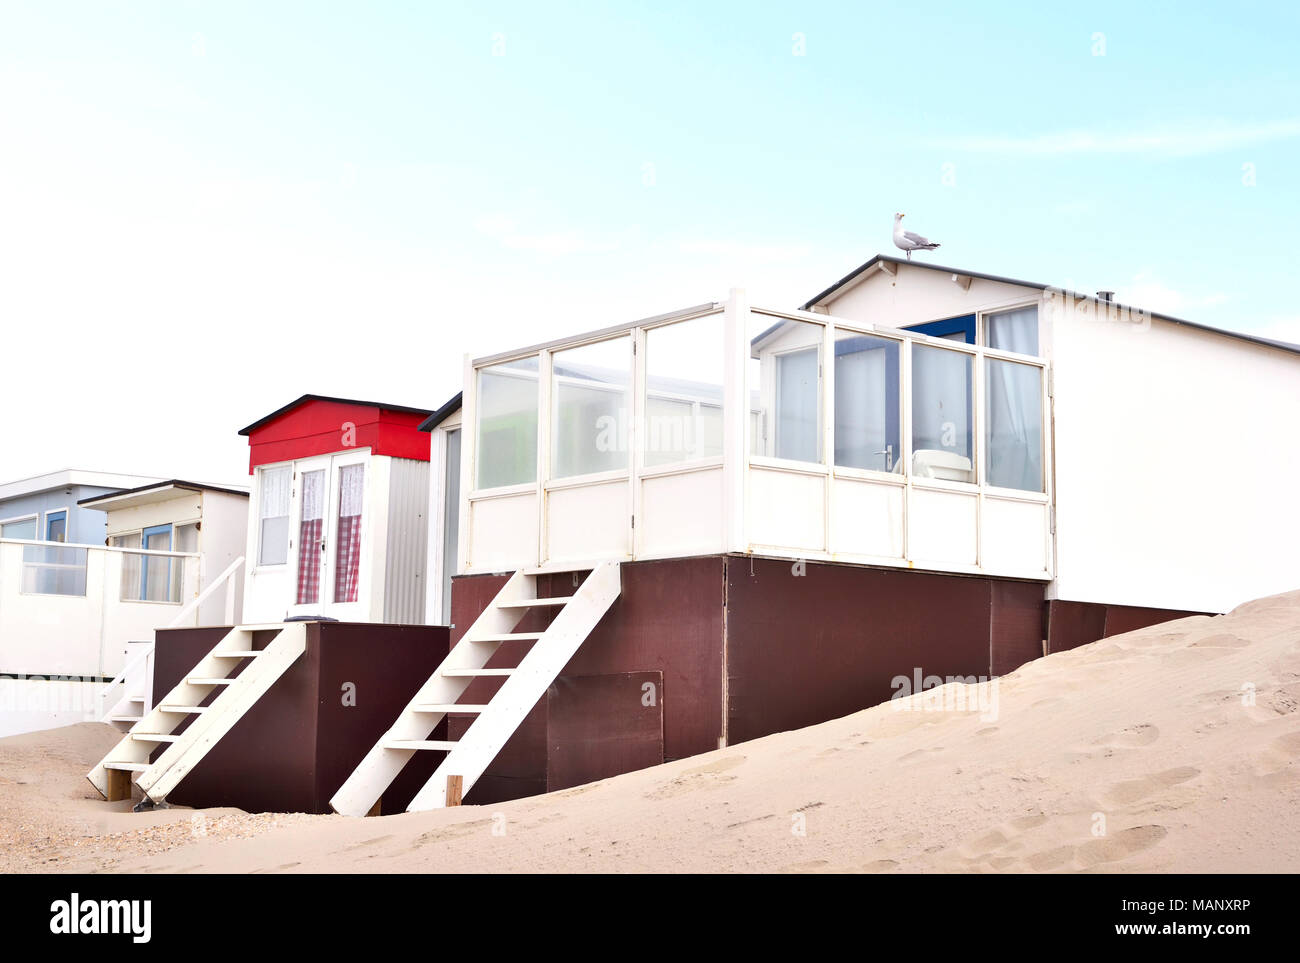 Cabines de plage peint de belles petites maisons ou sur une plage. Plage des dunes et du sable, de la vie de plage ou les vacances d'été. Banque D'Images